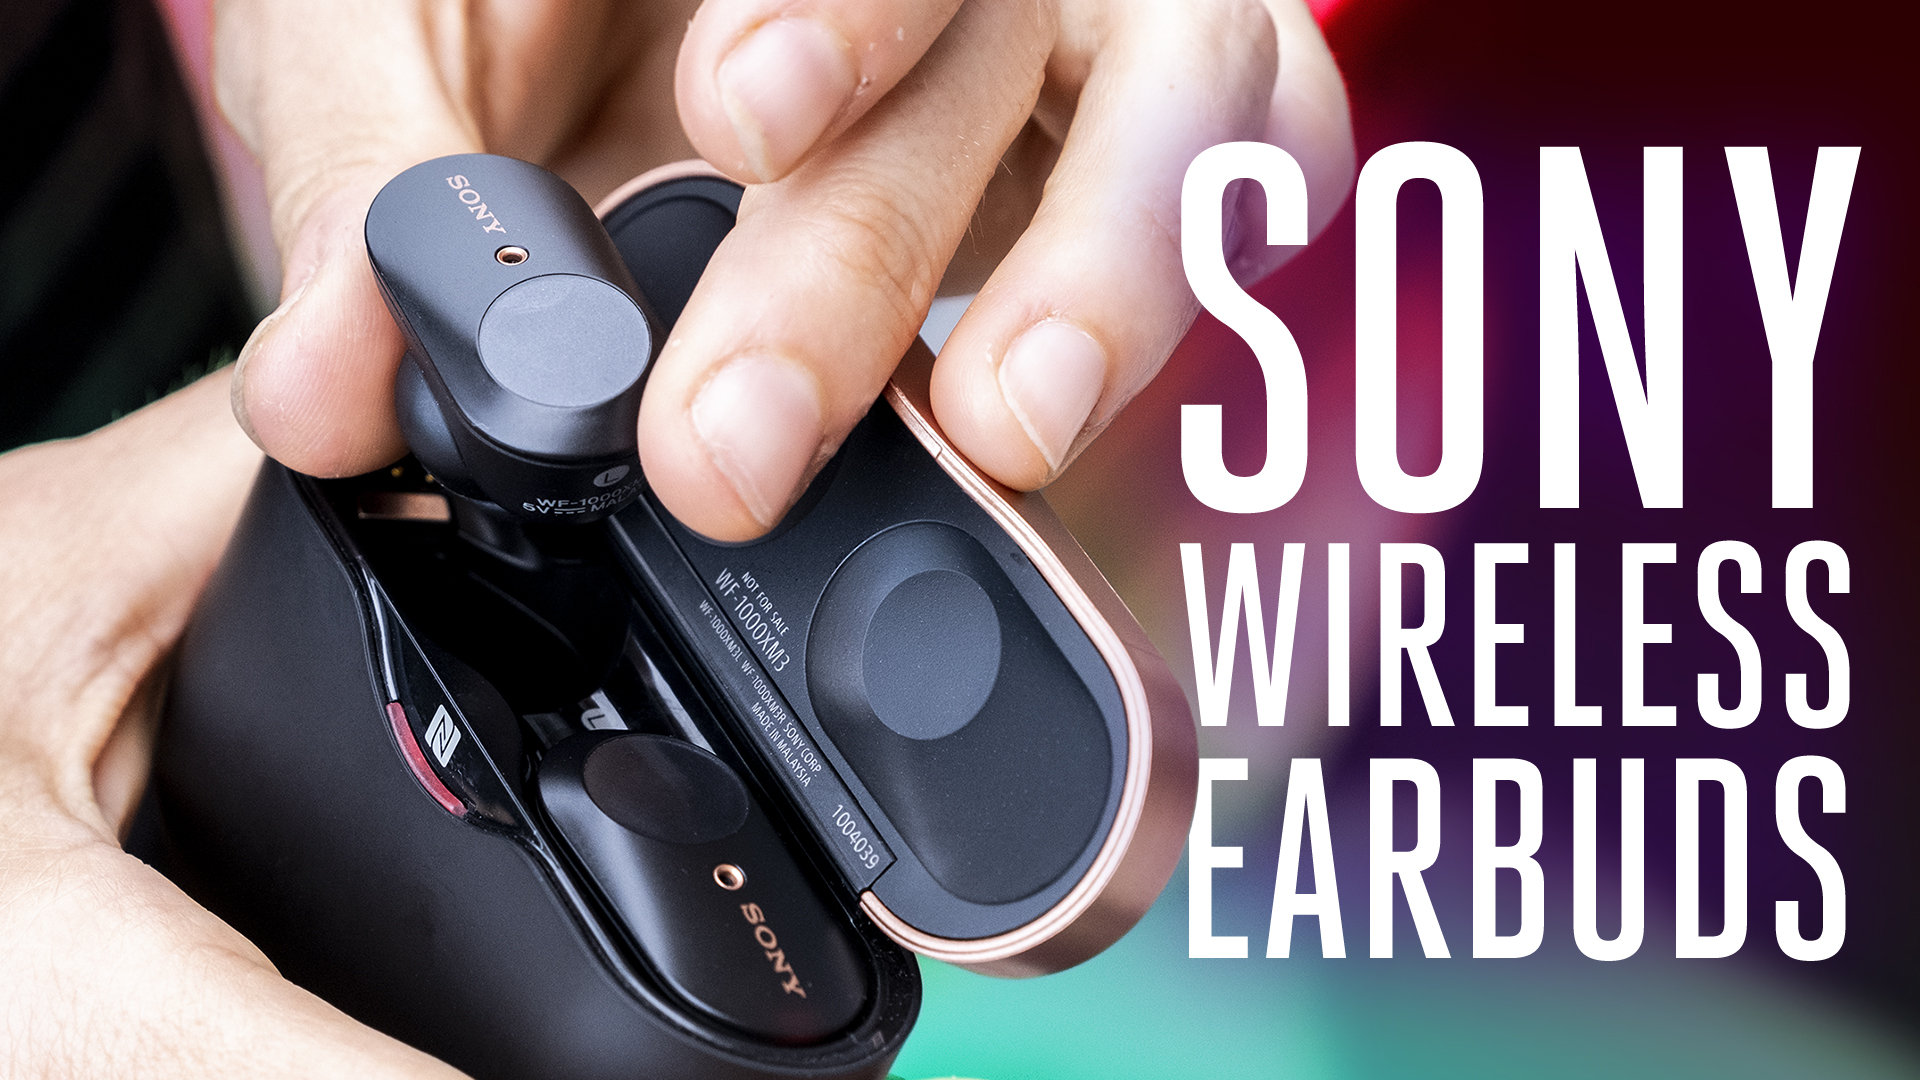 Sony WF-1000XM3 wireless earbuds review